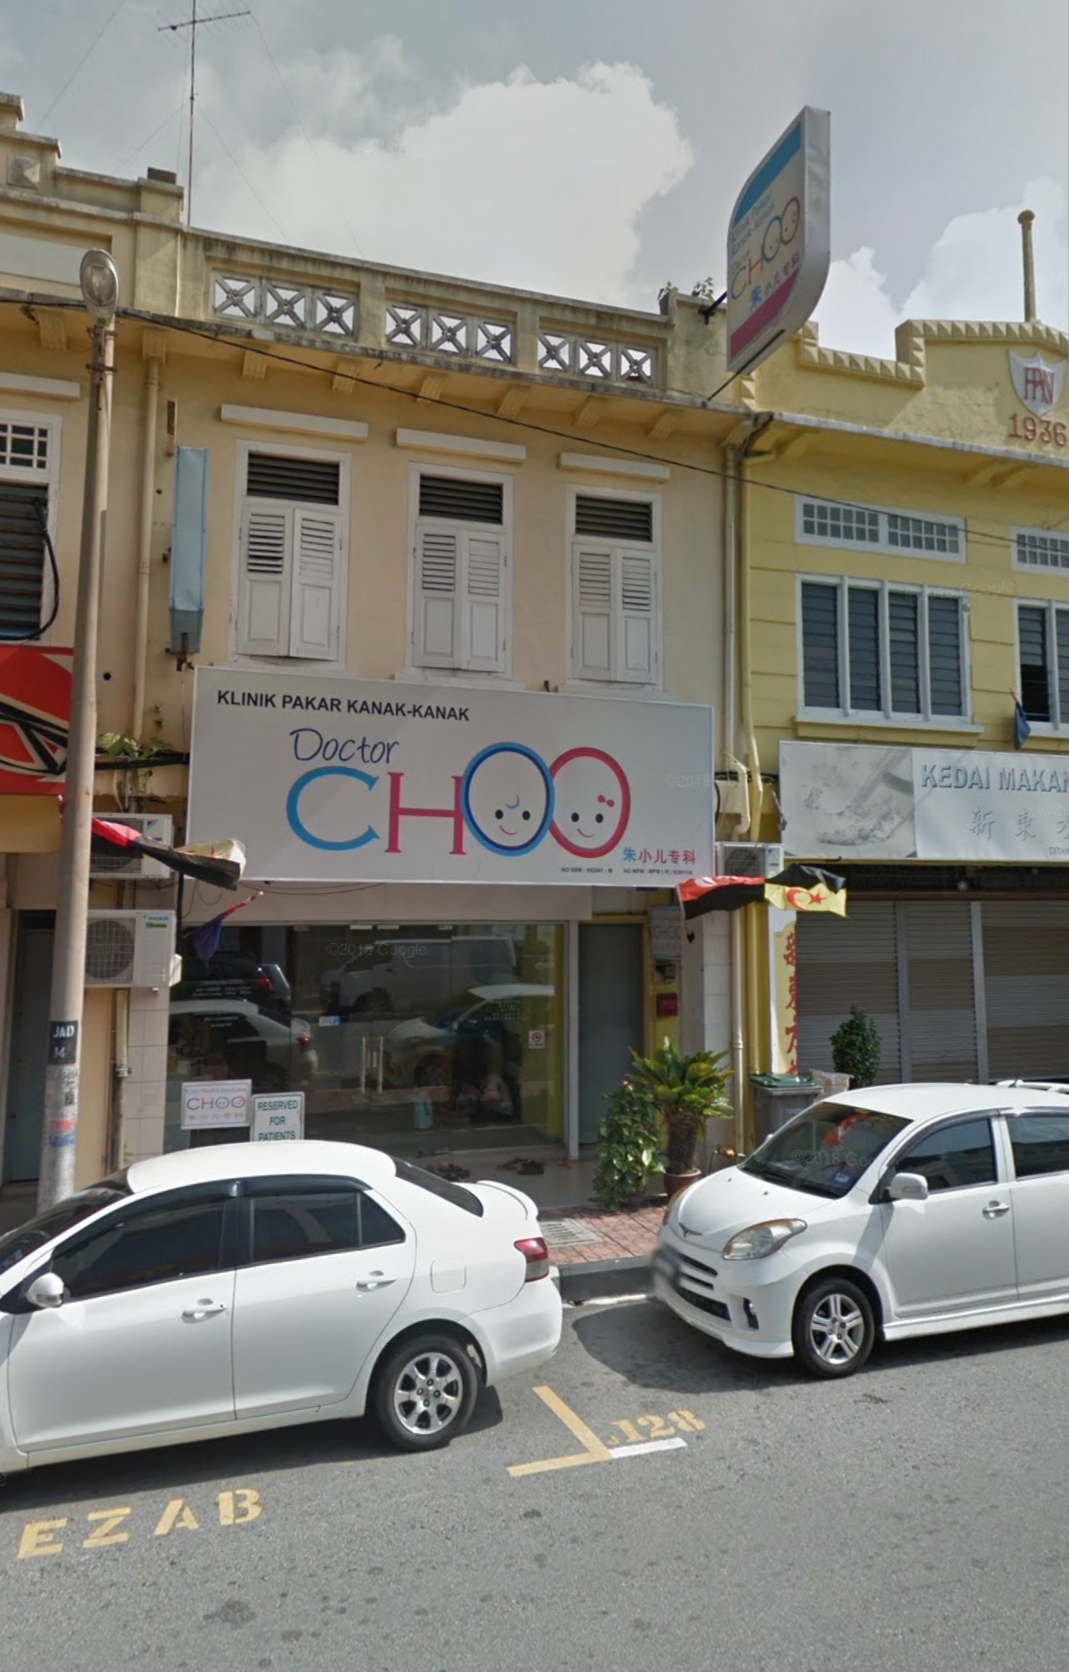 Klinik Pakar Kanak-kanak Choo